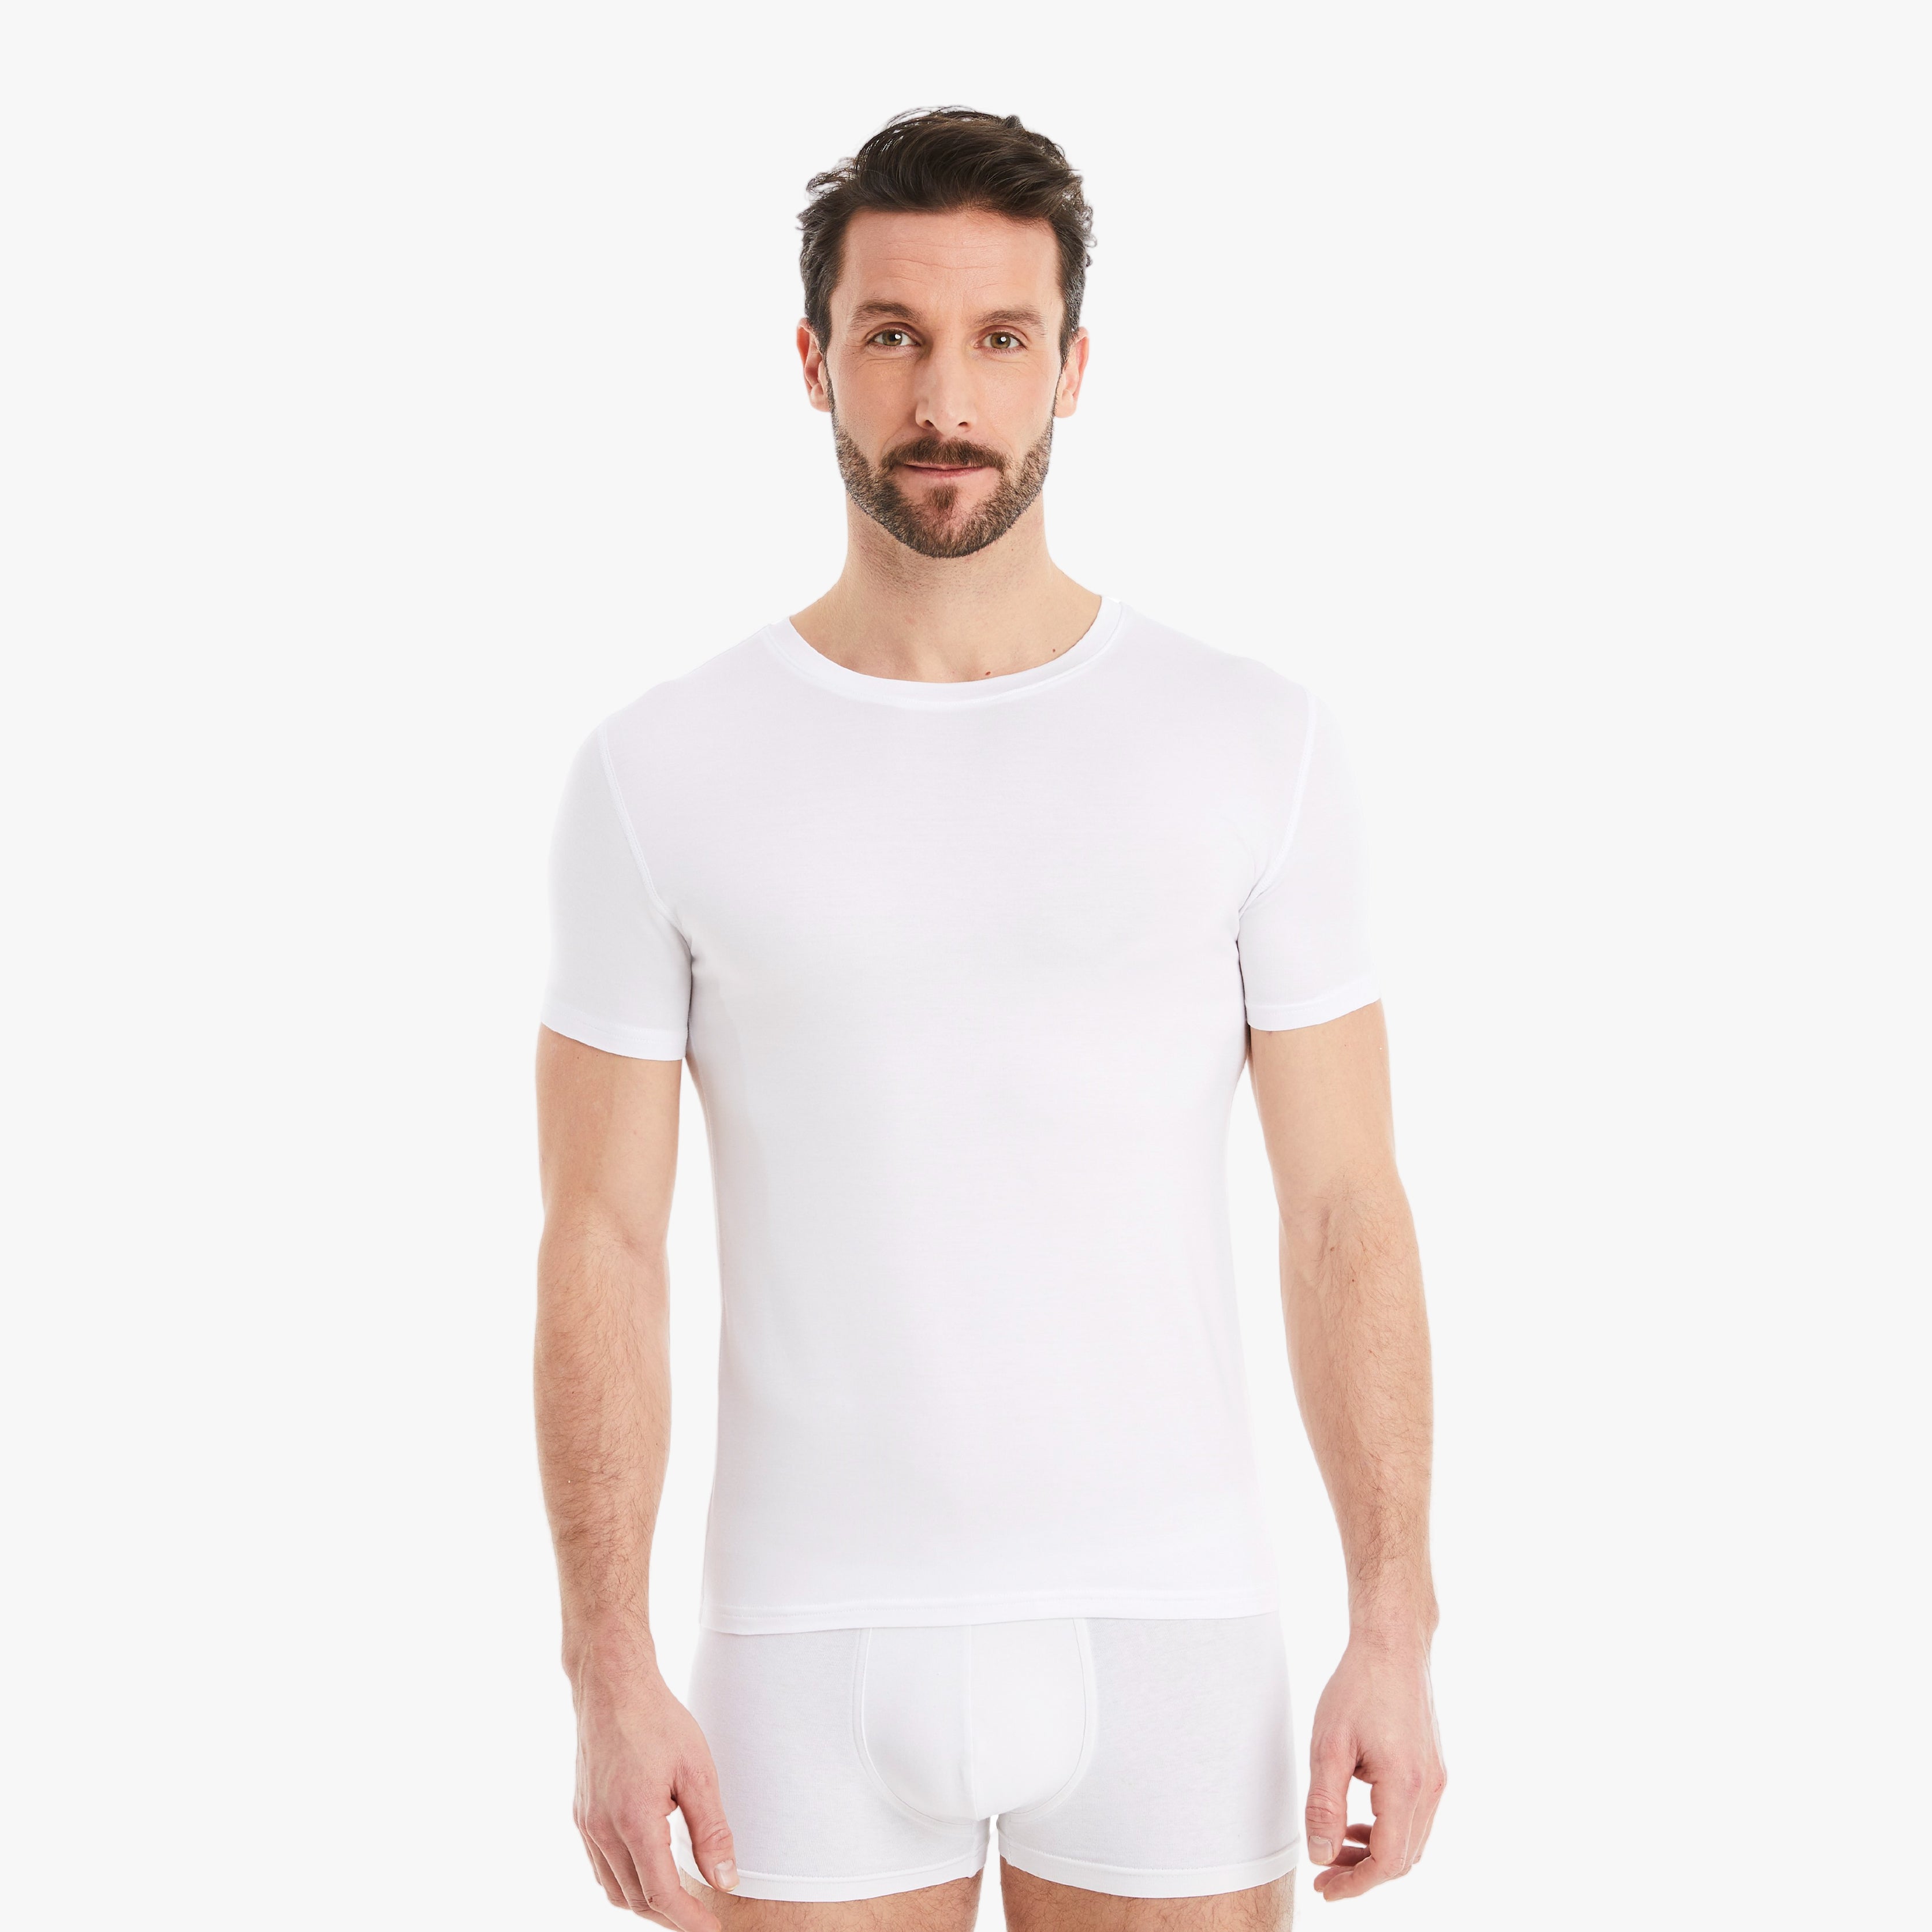 Weißes Herren Unterhemd Kurzarm Rundhals. Micro-Modal Stoff, hergestellt in Europa, hoher Tragekomfort. Selbstbewusster Mann, Arme entspannt seitlich vom Körper, schaut direkt in die Kamera. #farbe_weiß